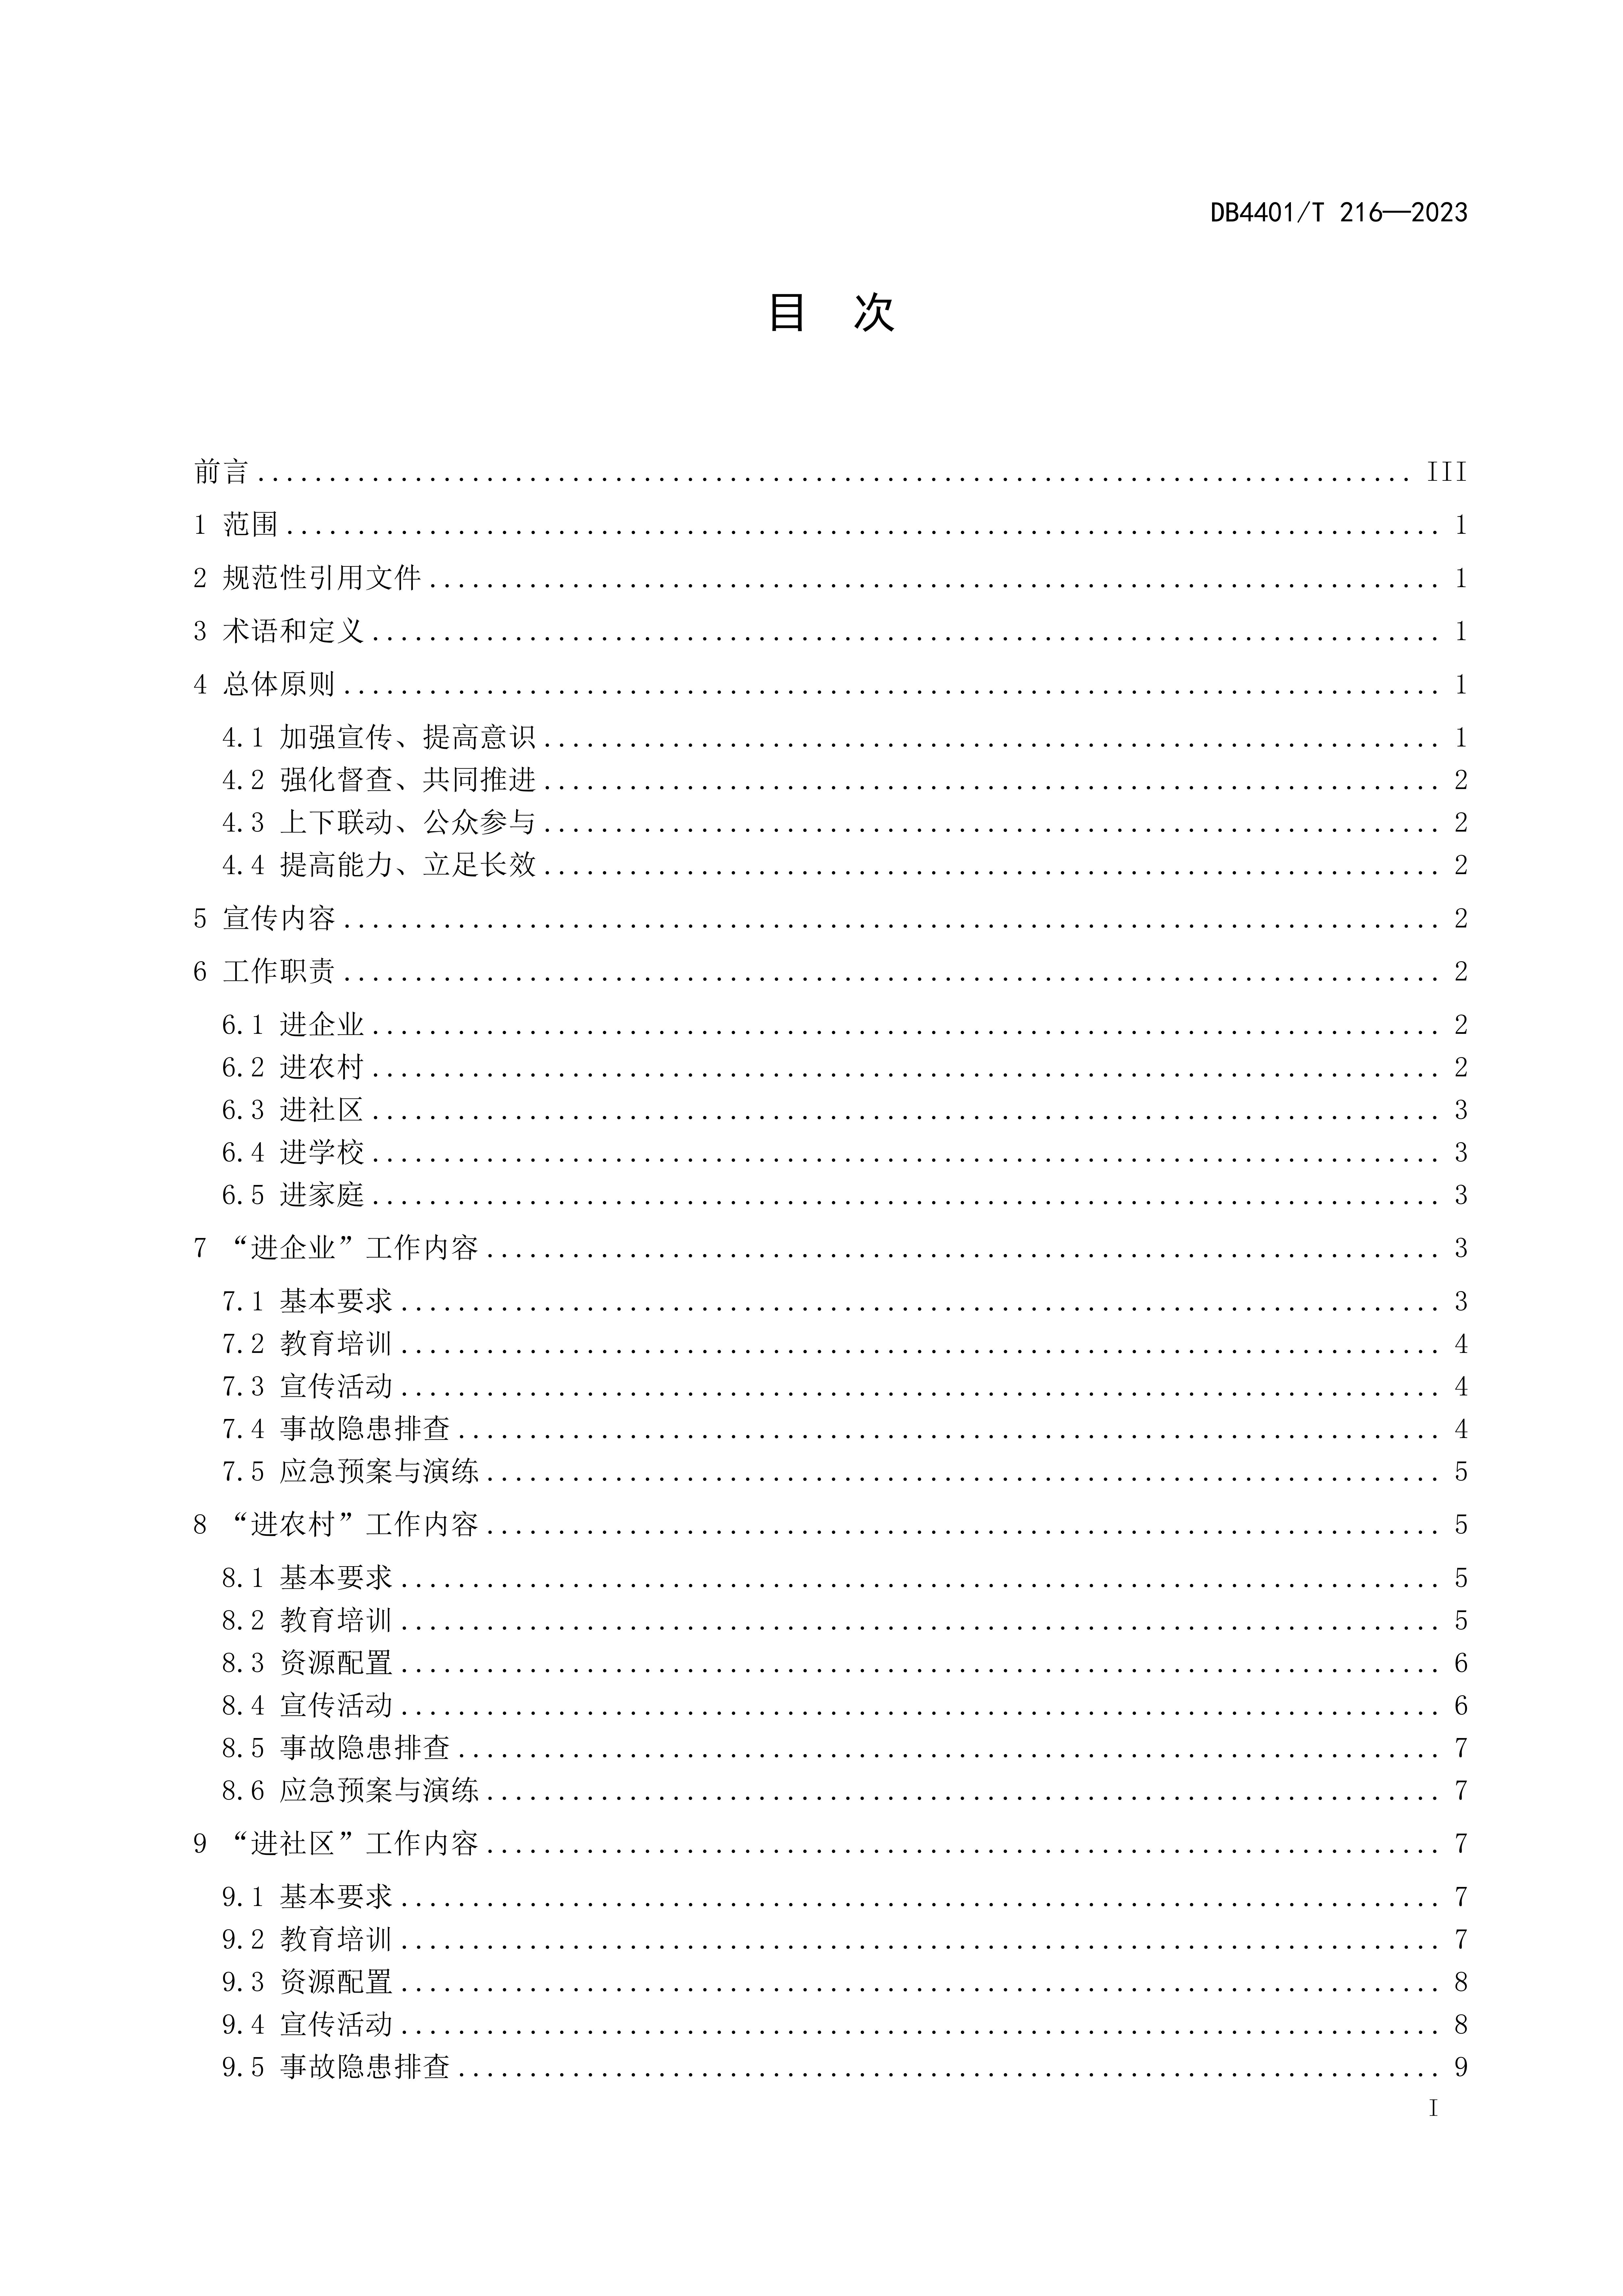 (终稿 发布稿)广州市地方标准《安全宣传“五进”工作规范》20230625_02.jpg